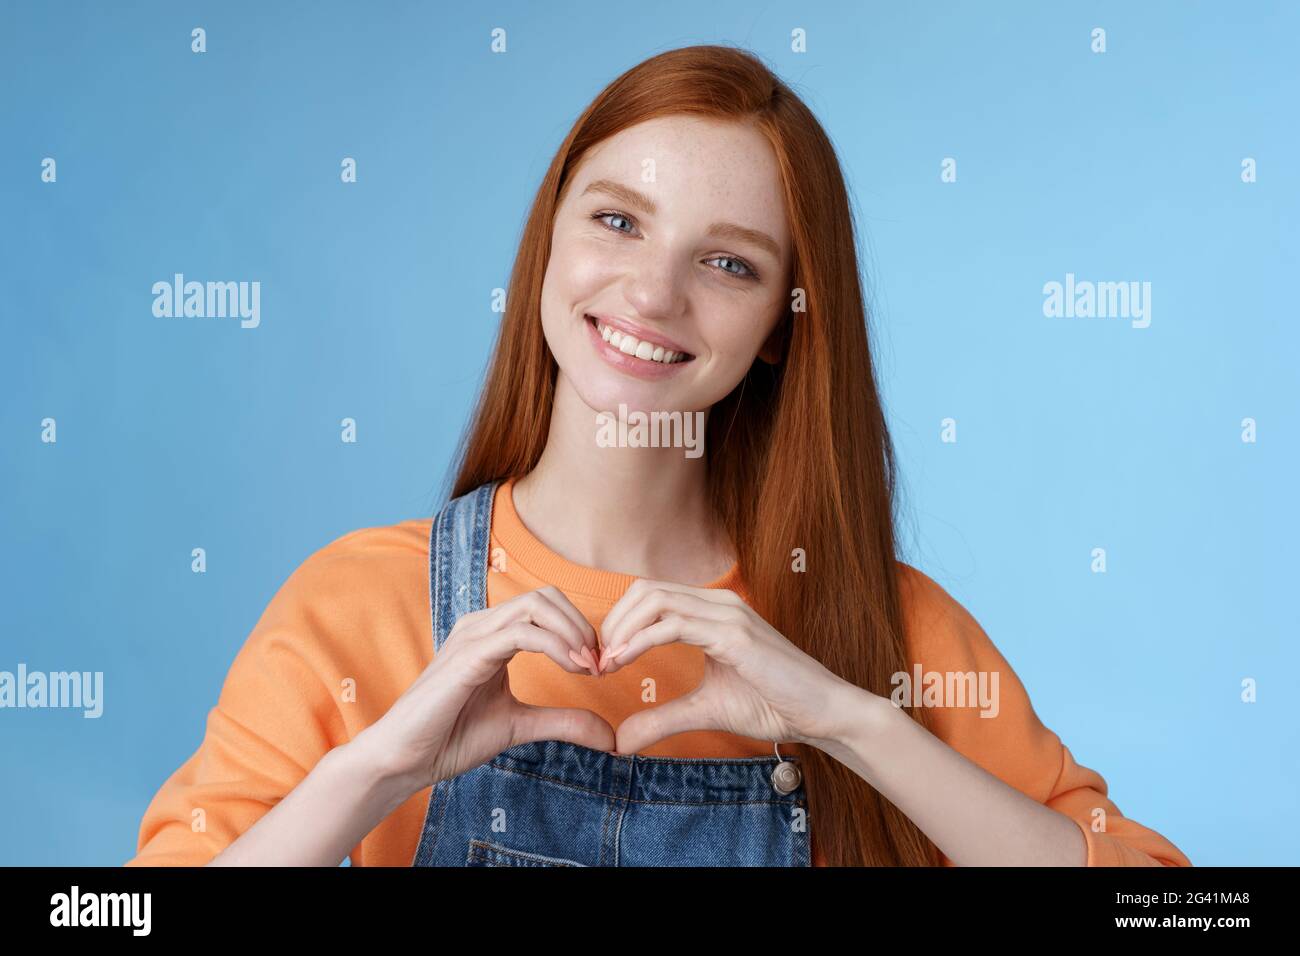 Liebe dich. Attraktive romantische zarte Rotschopf lächelnd sanfte Freundin blaue Augen Sommersprossen zeigen Herz Brust drücken Sympathie roma Stockfoto